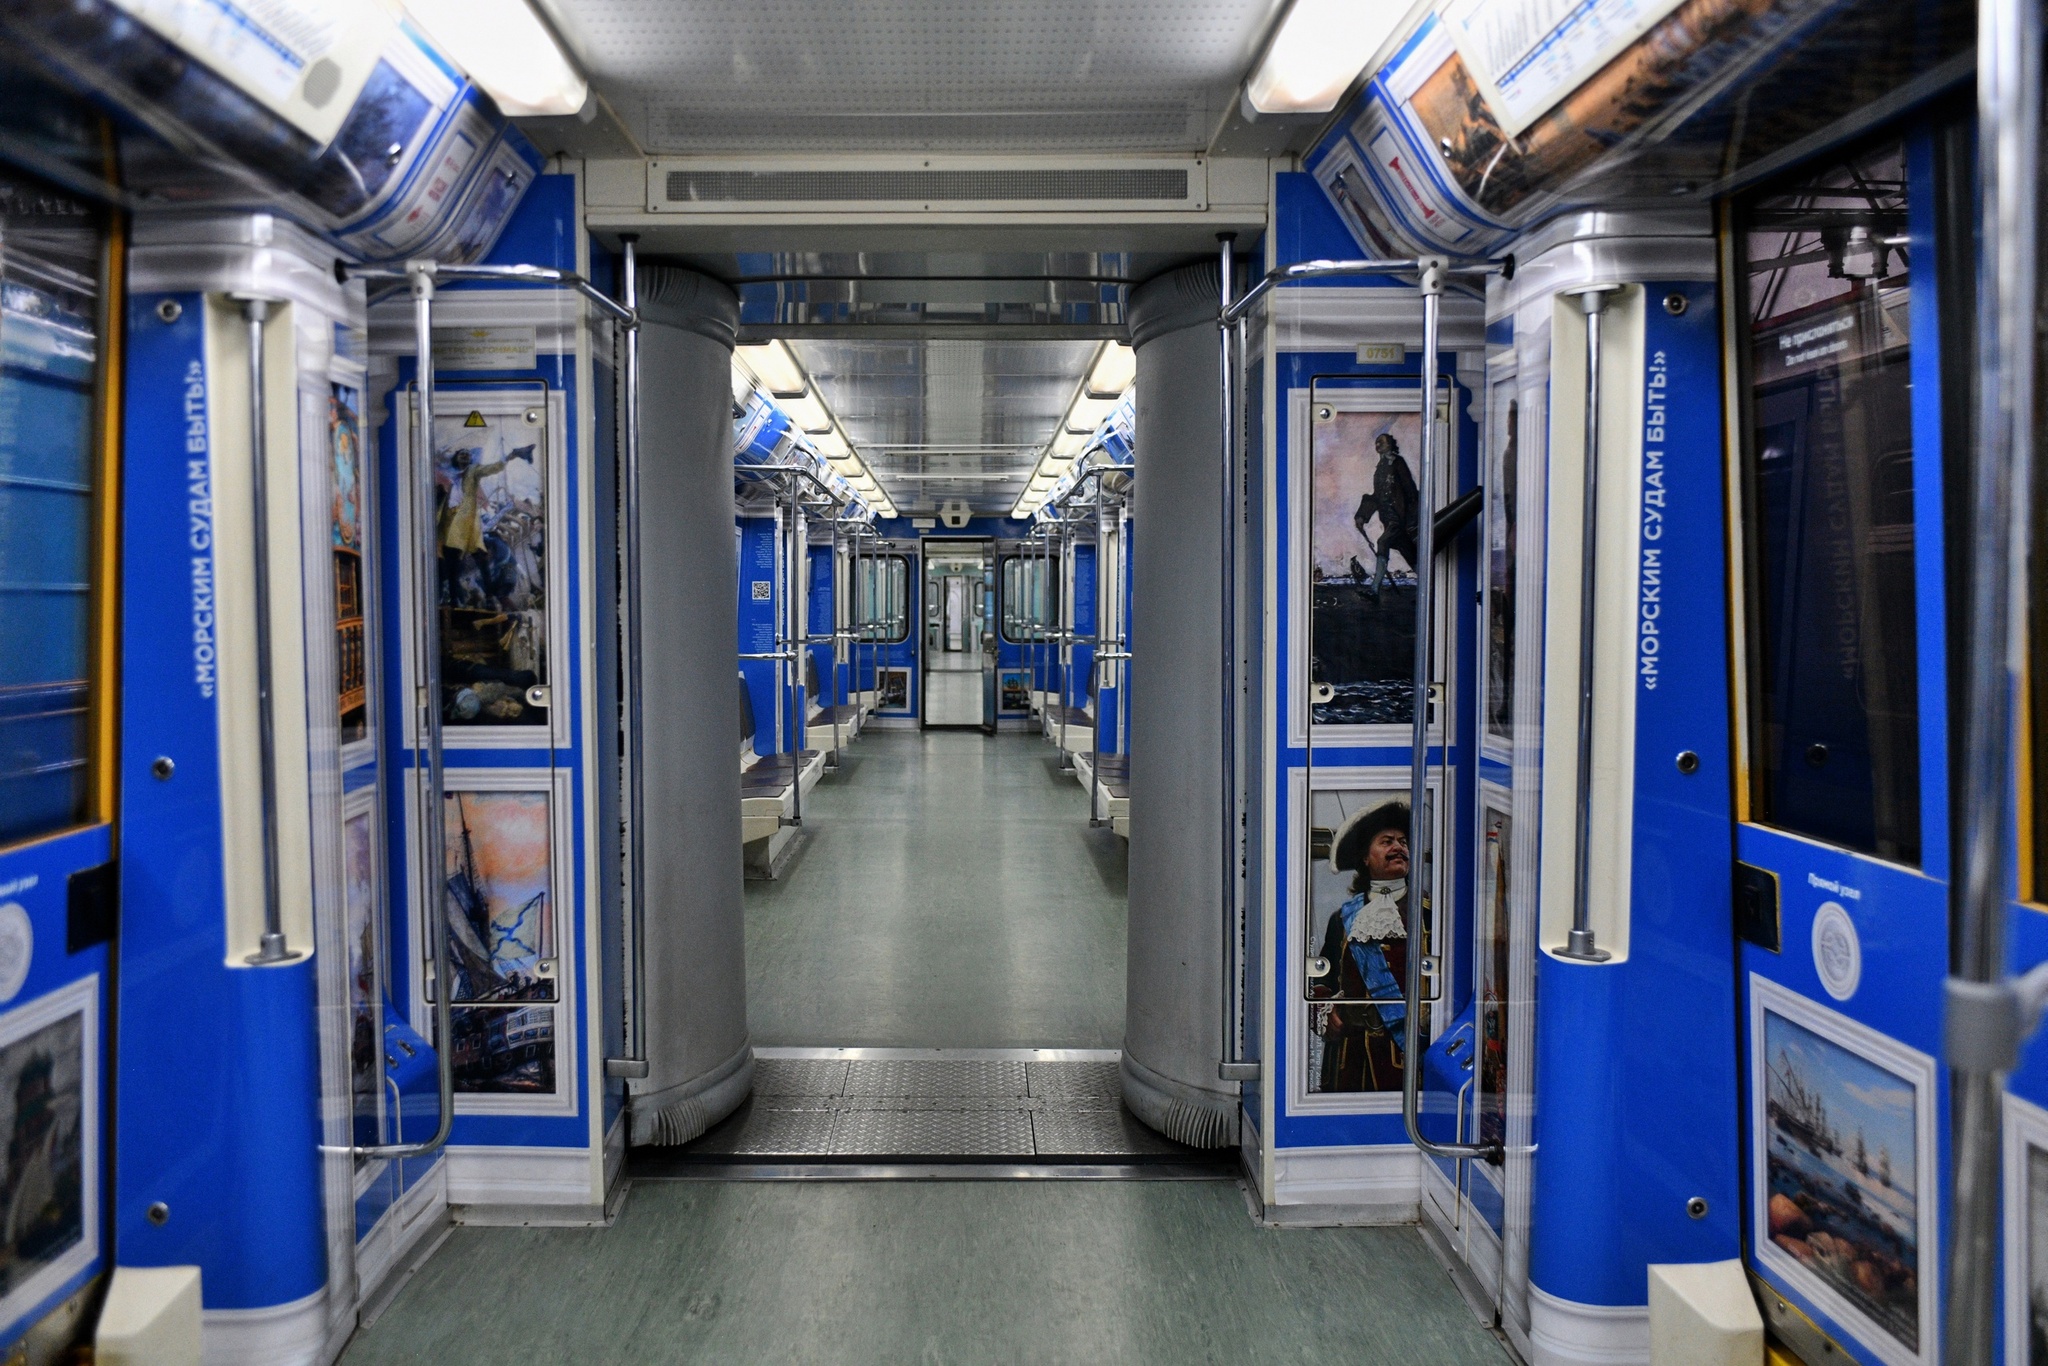 новые вагоны метро в москве внутри